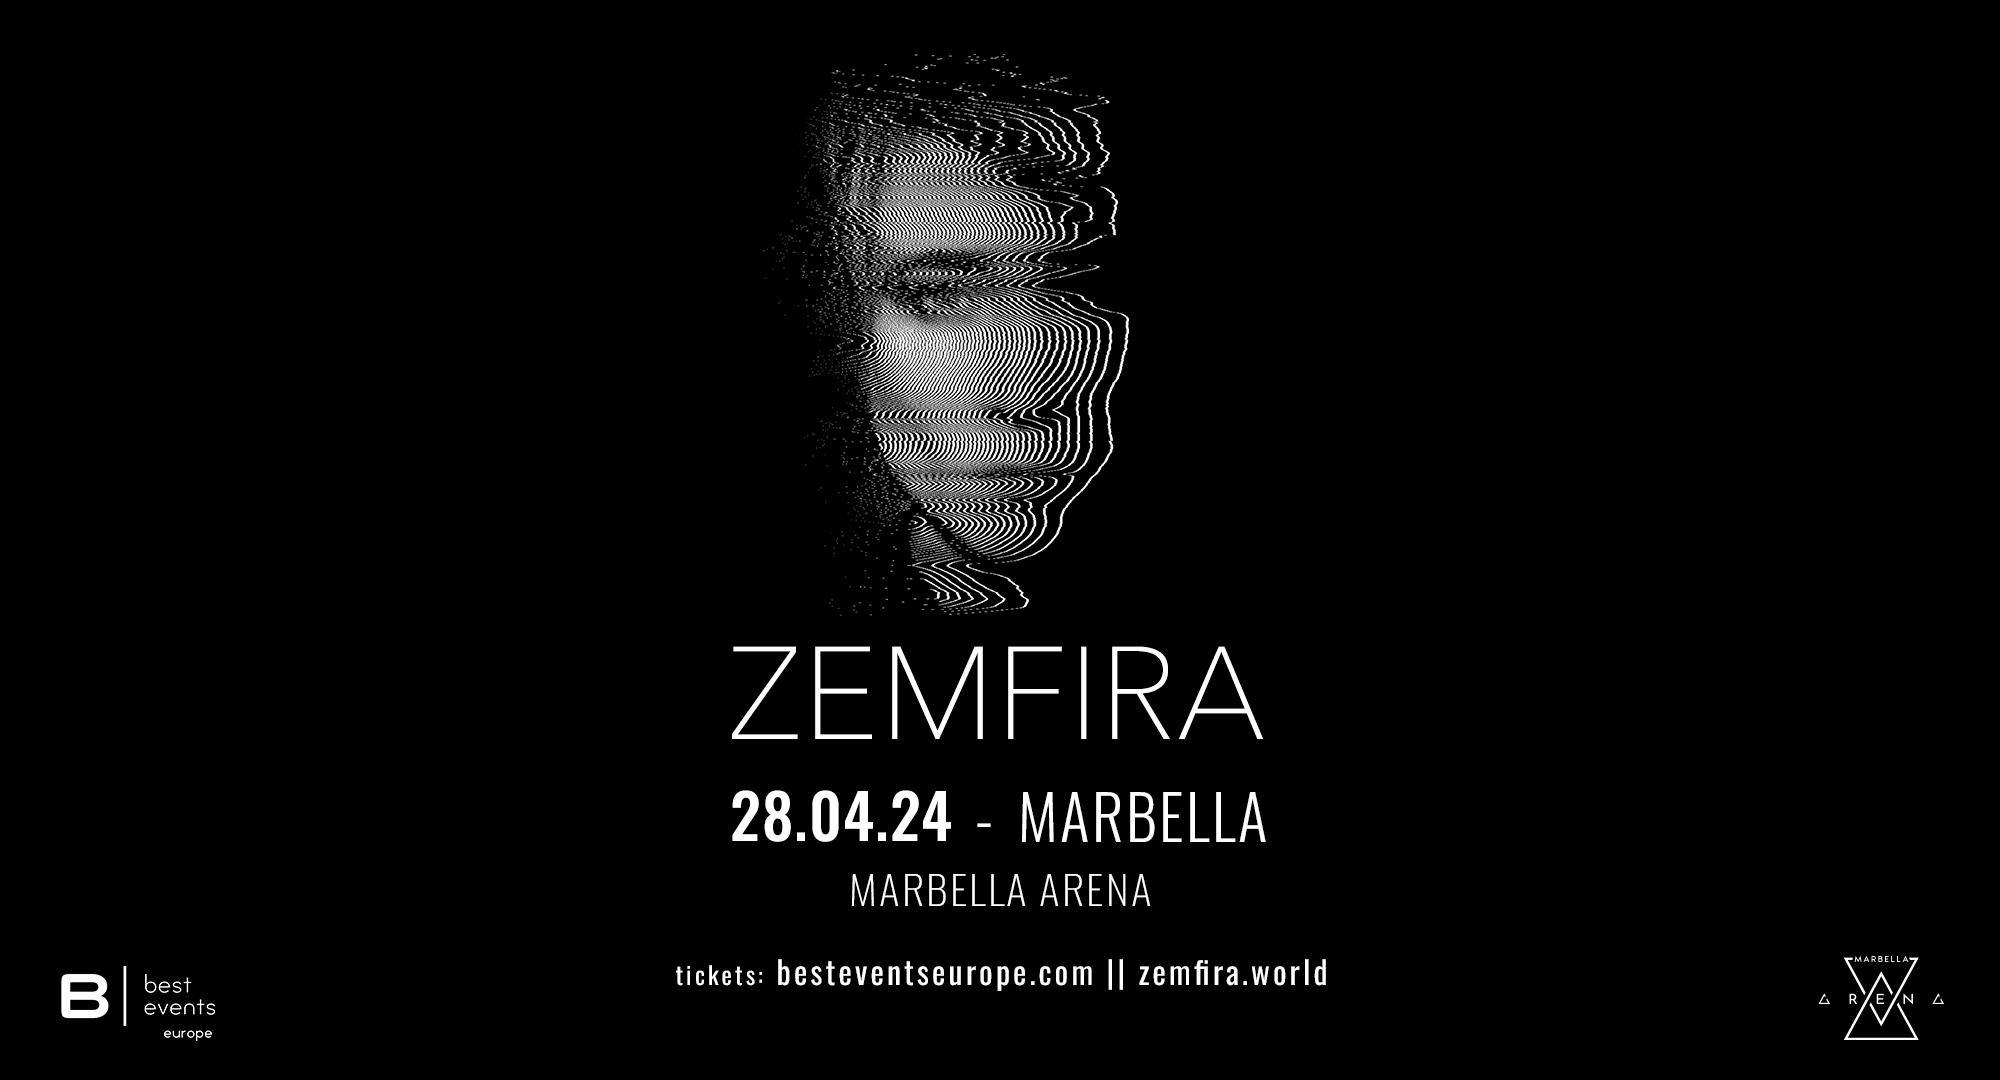 La cantante rusa de rock Zemfira visitará esta primavera Marbella, en uno de sus tres conciertos en España